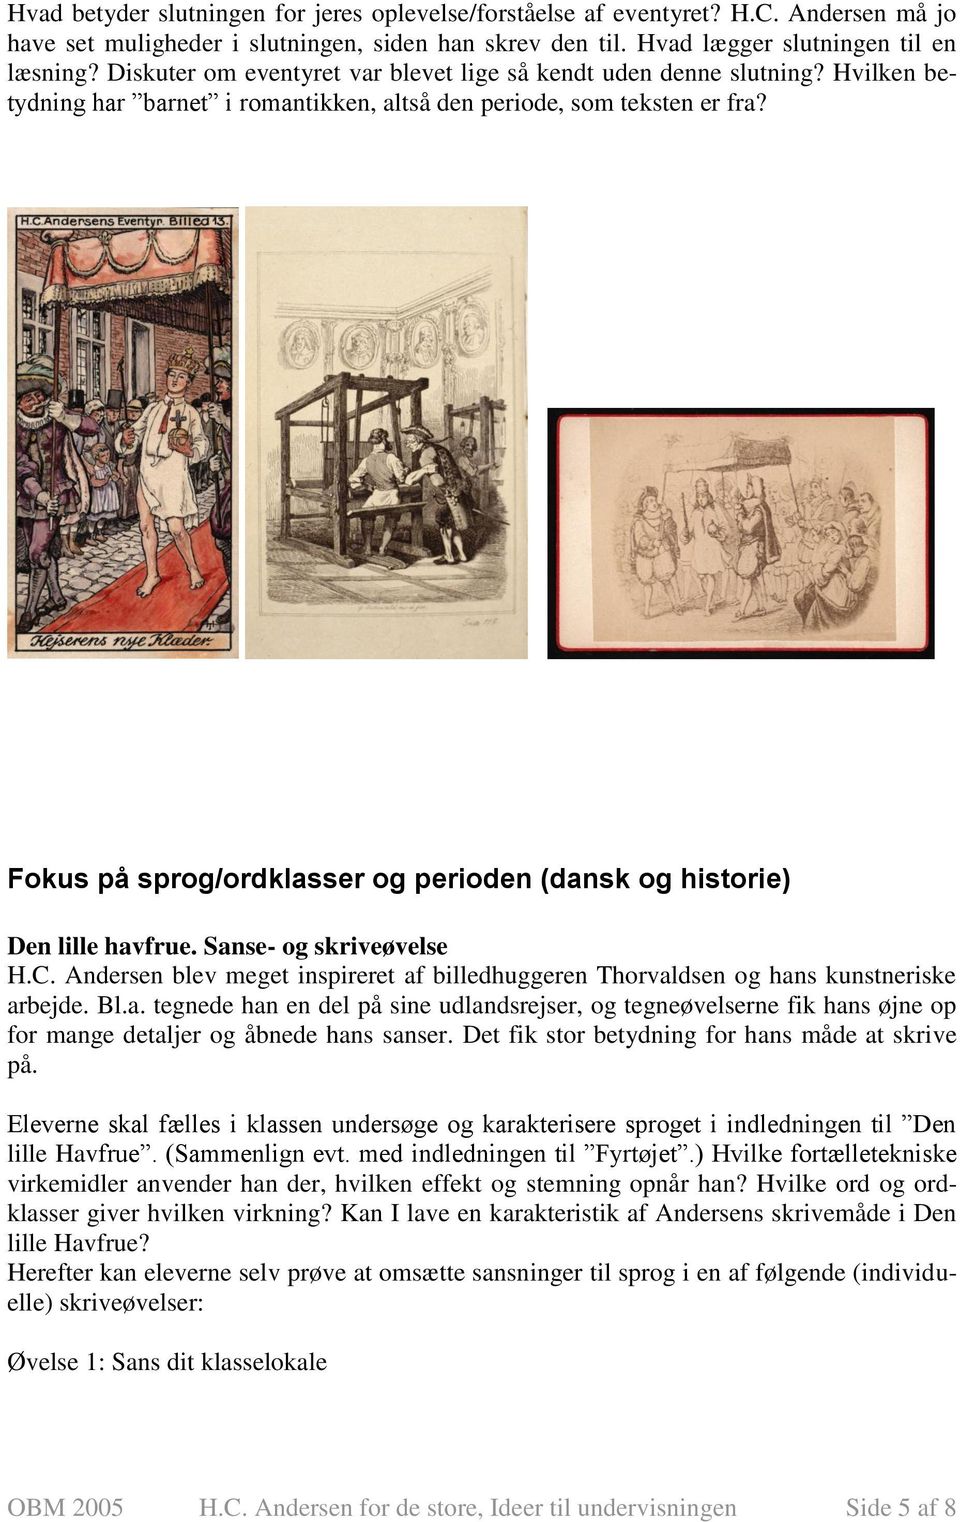 Fokus på sprog/ordklasser og perioden (dansk og historie) Den lille havfrue. Sanse- og skriveøvelse H.C. Andersen blev meget inspireret af billedhuggeren Thorvaldsen og hans kunstneriske arbejde. Bl.